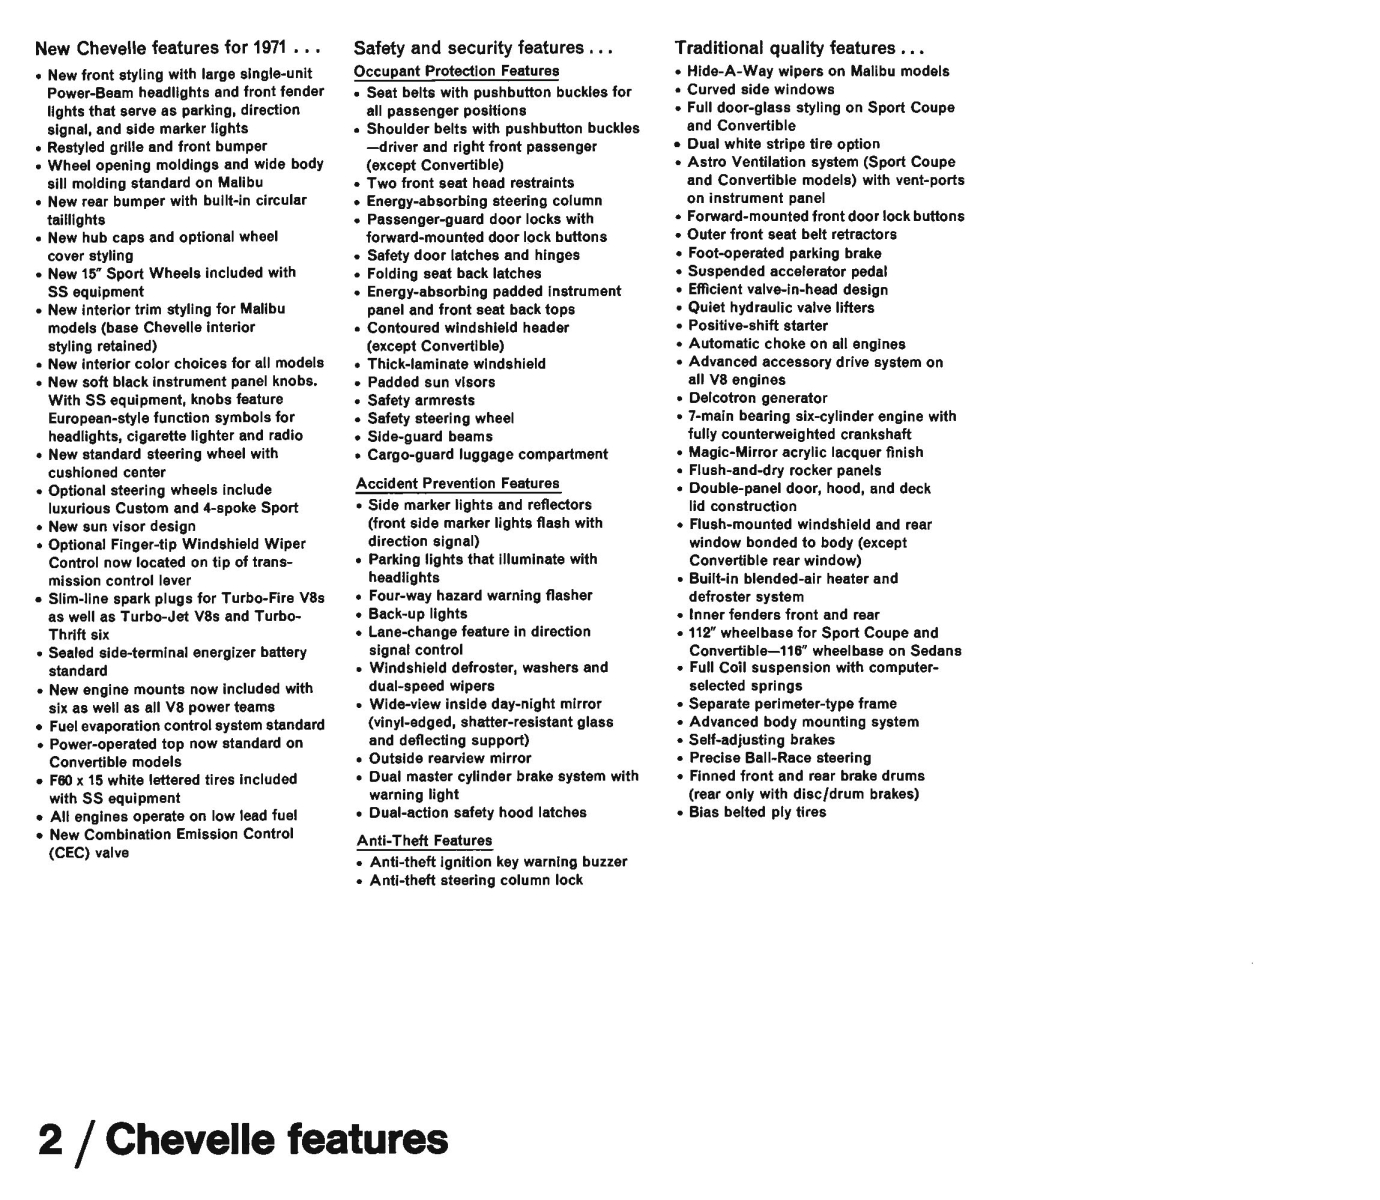 1971_Chevrolet_Dealer_Album-04-02